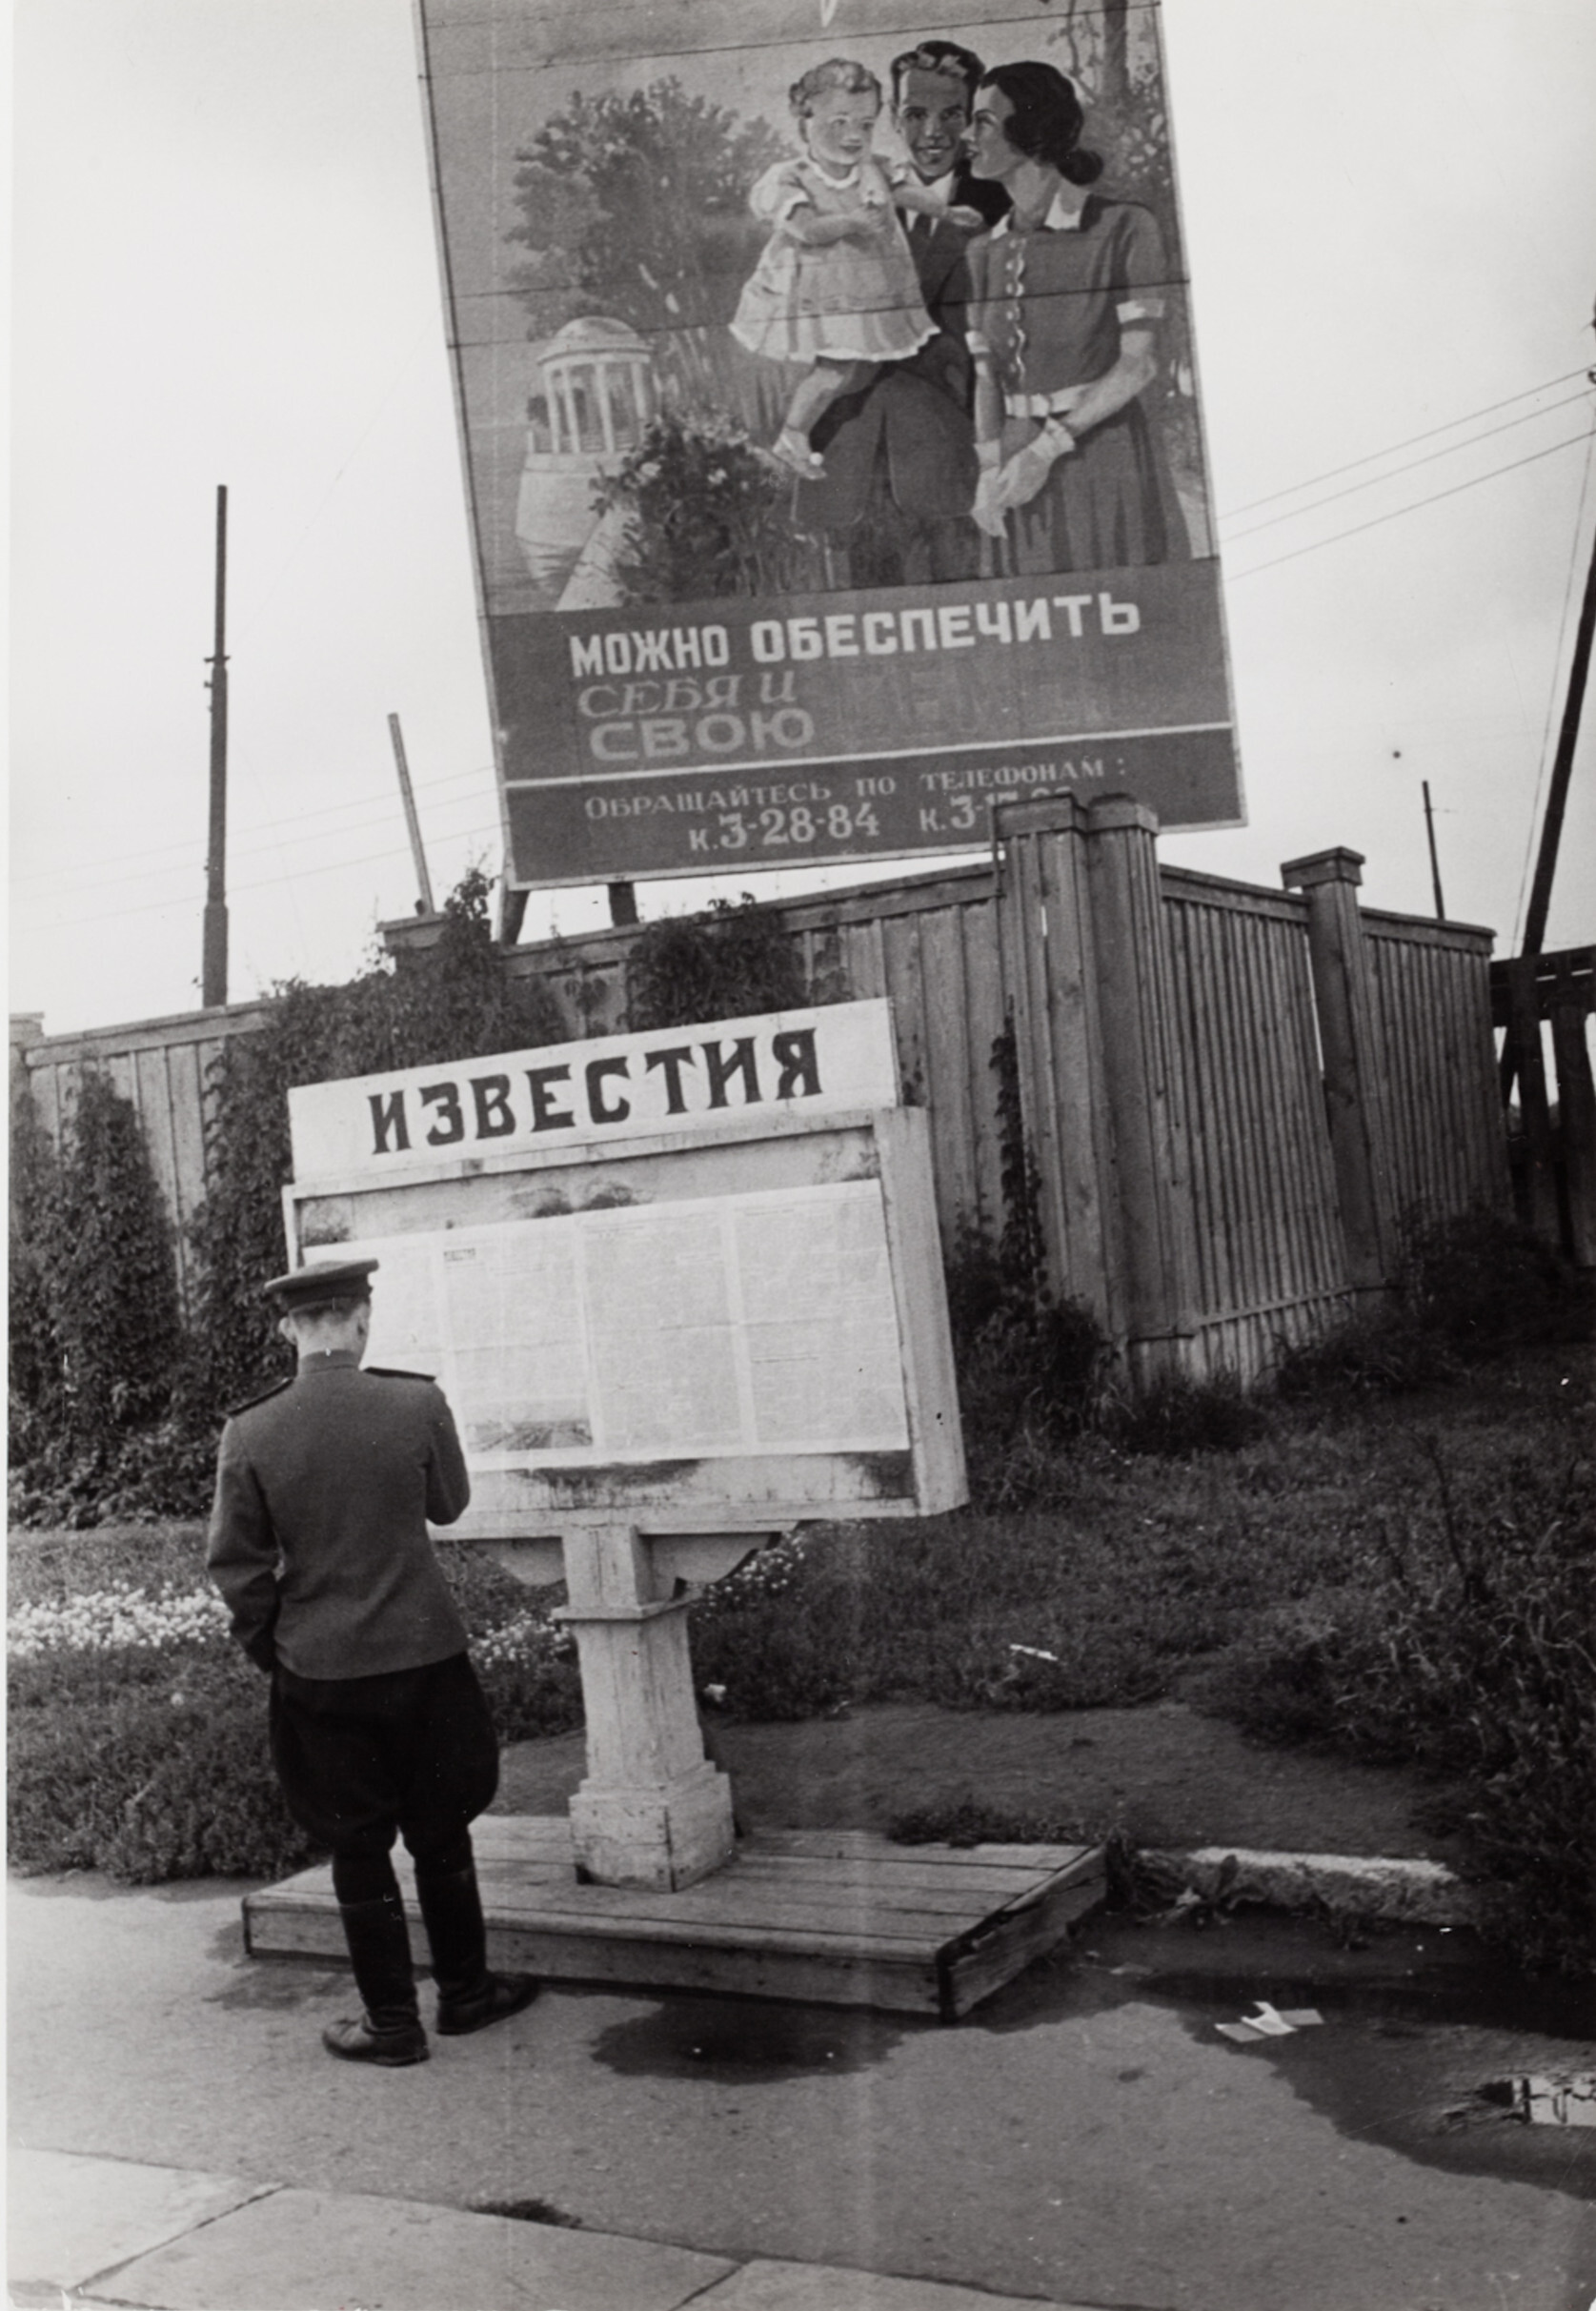 Солдат читает объявление в общественной газете, размещенное на рекламном щите, Россия, 1947 год. Фотограф Роберт Капа